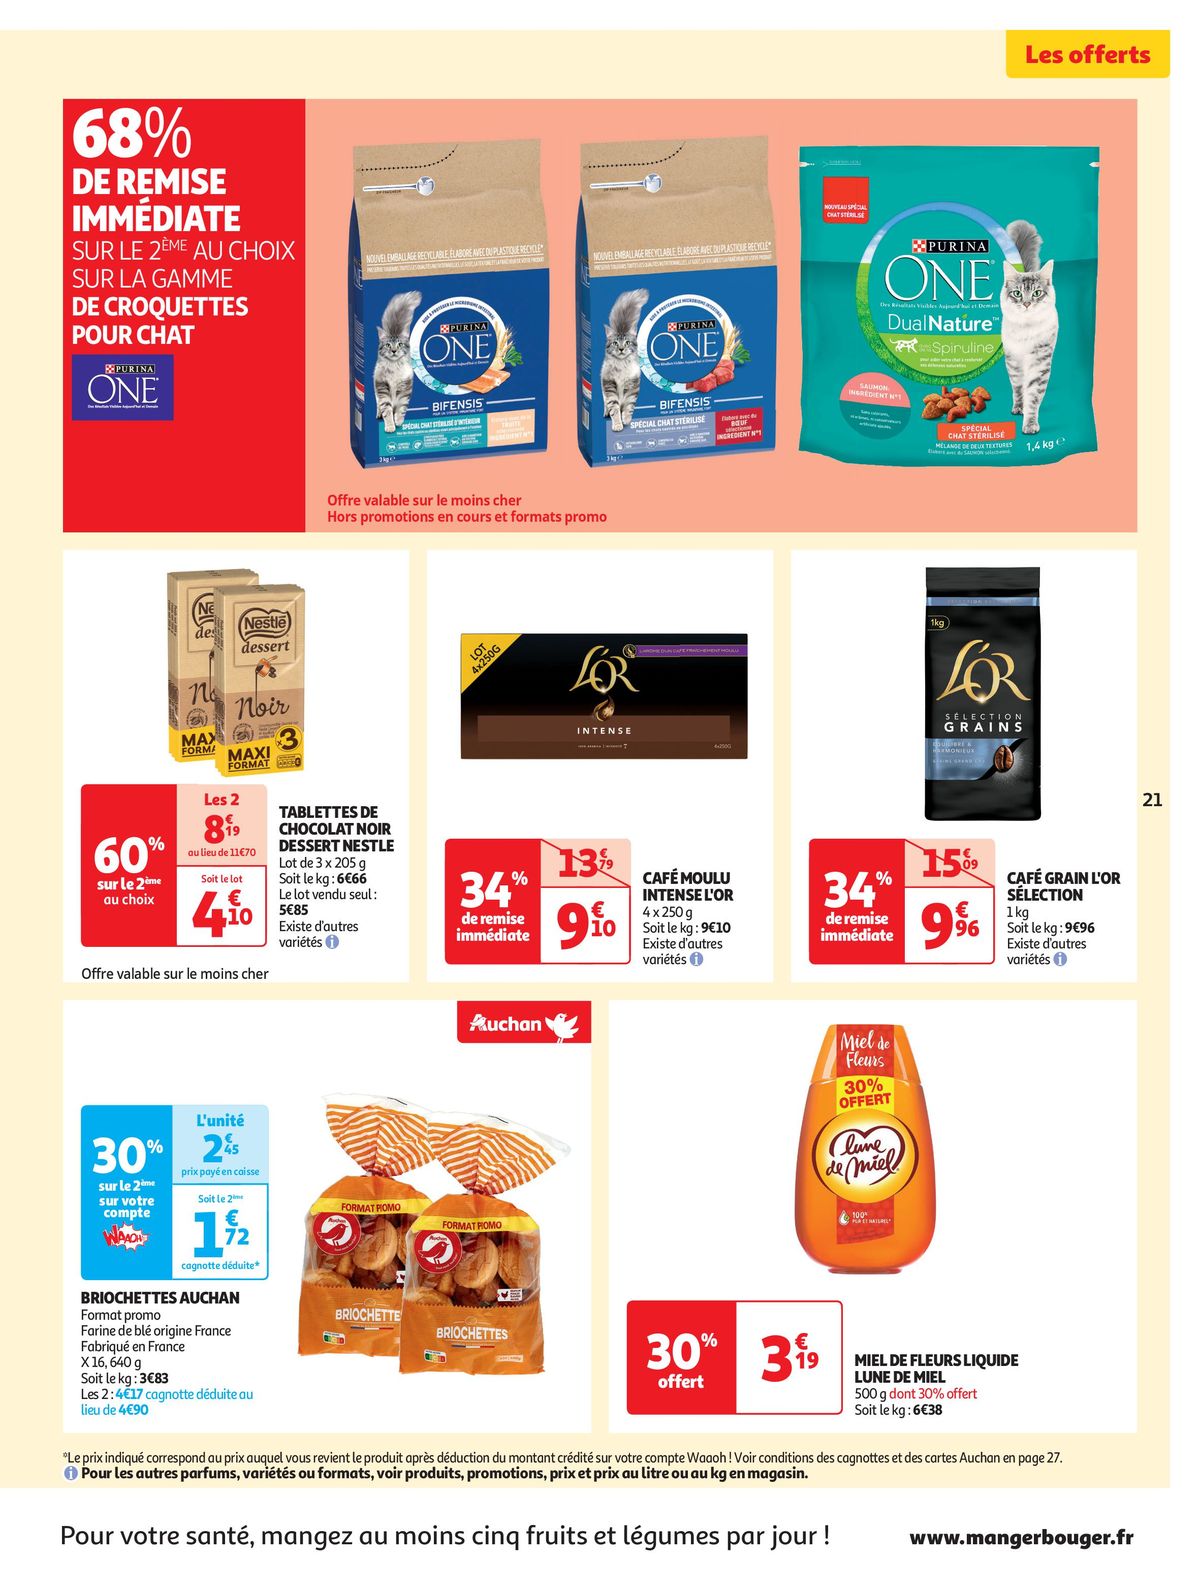 Catalogue Spécial Cuisine Gourmane dans votre supermarché, page 00021